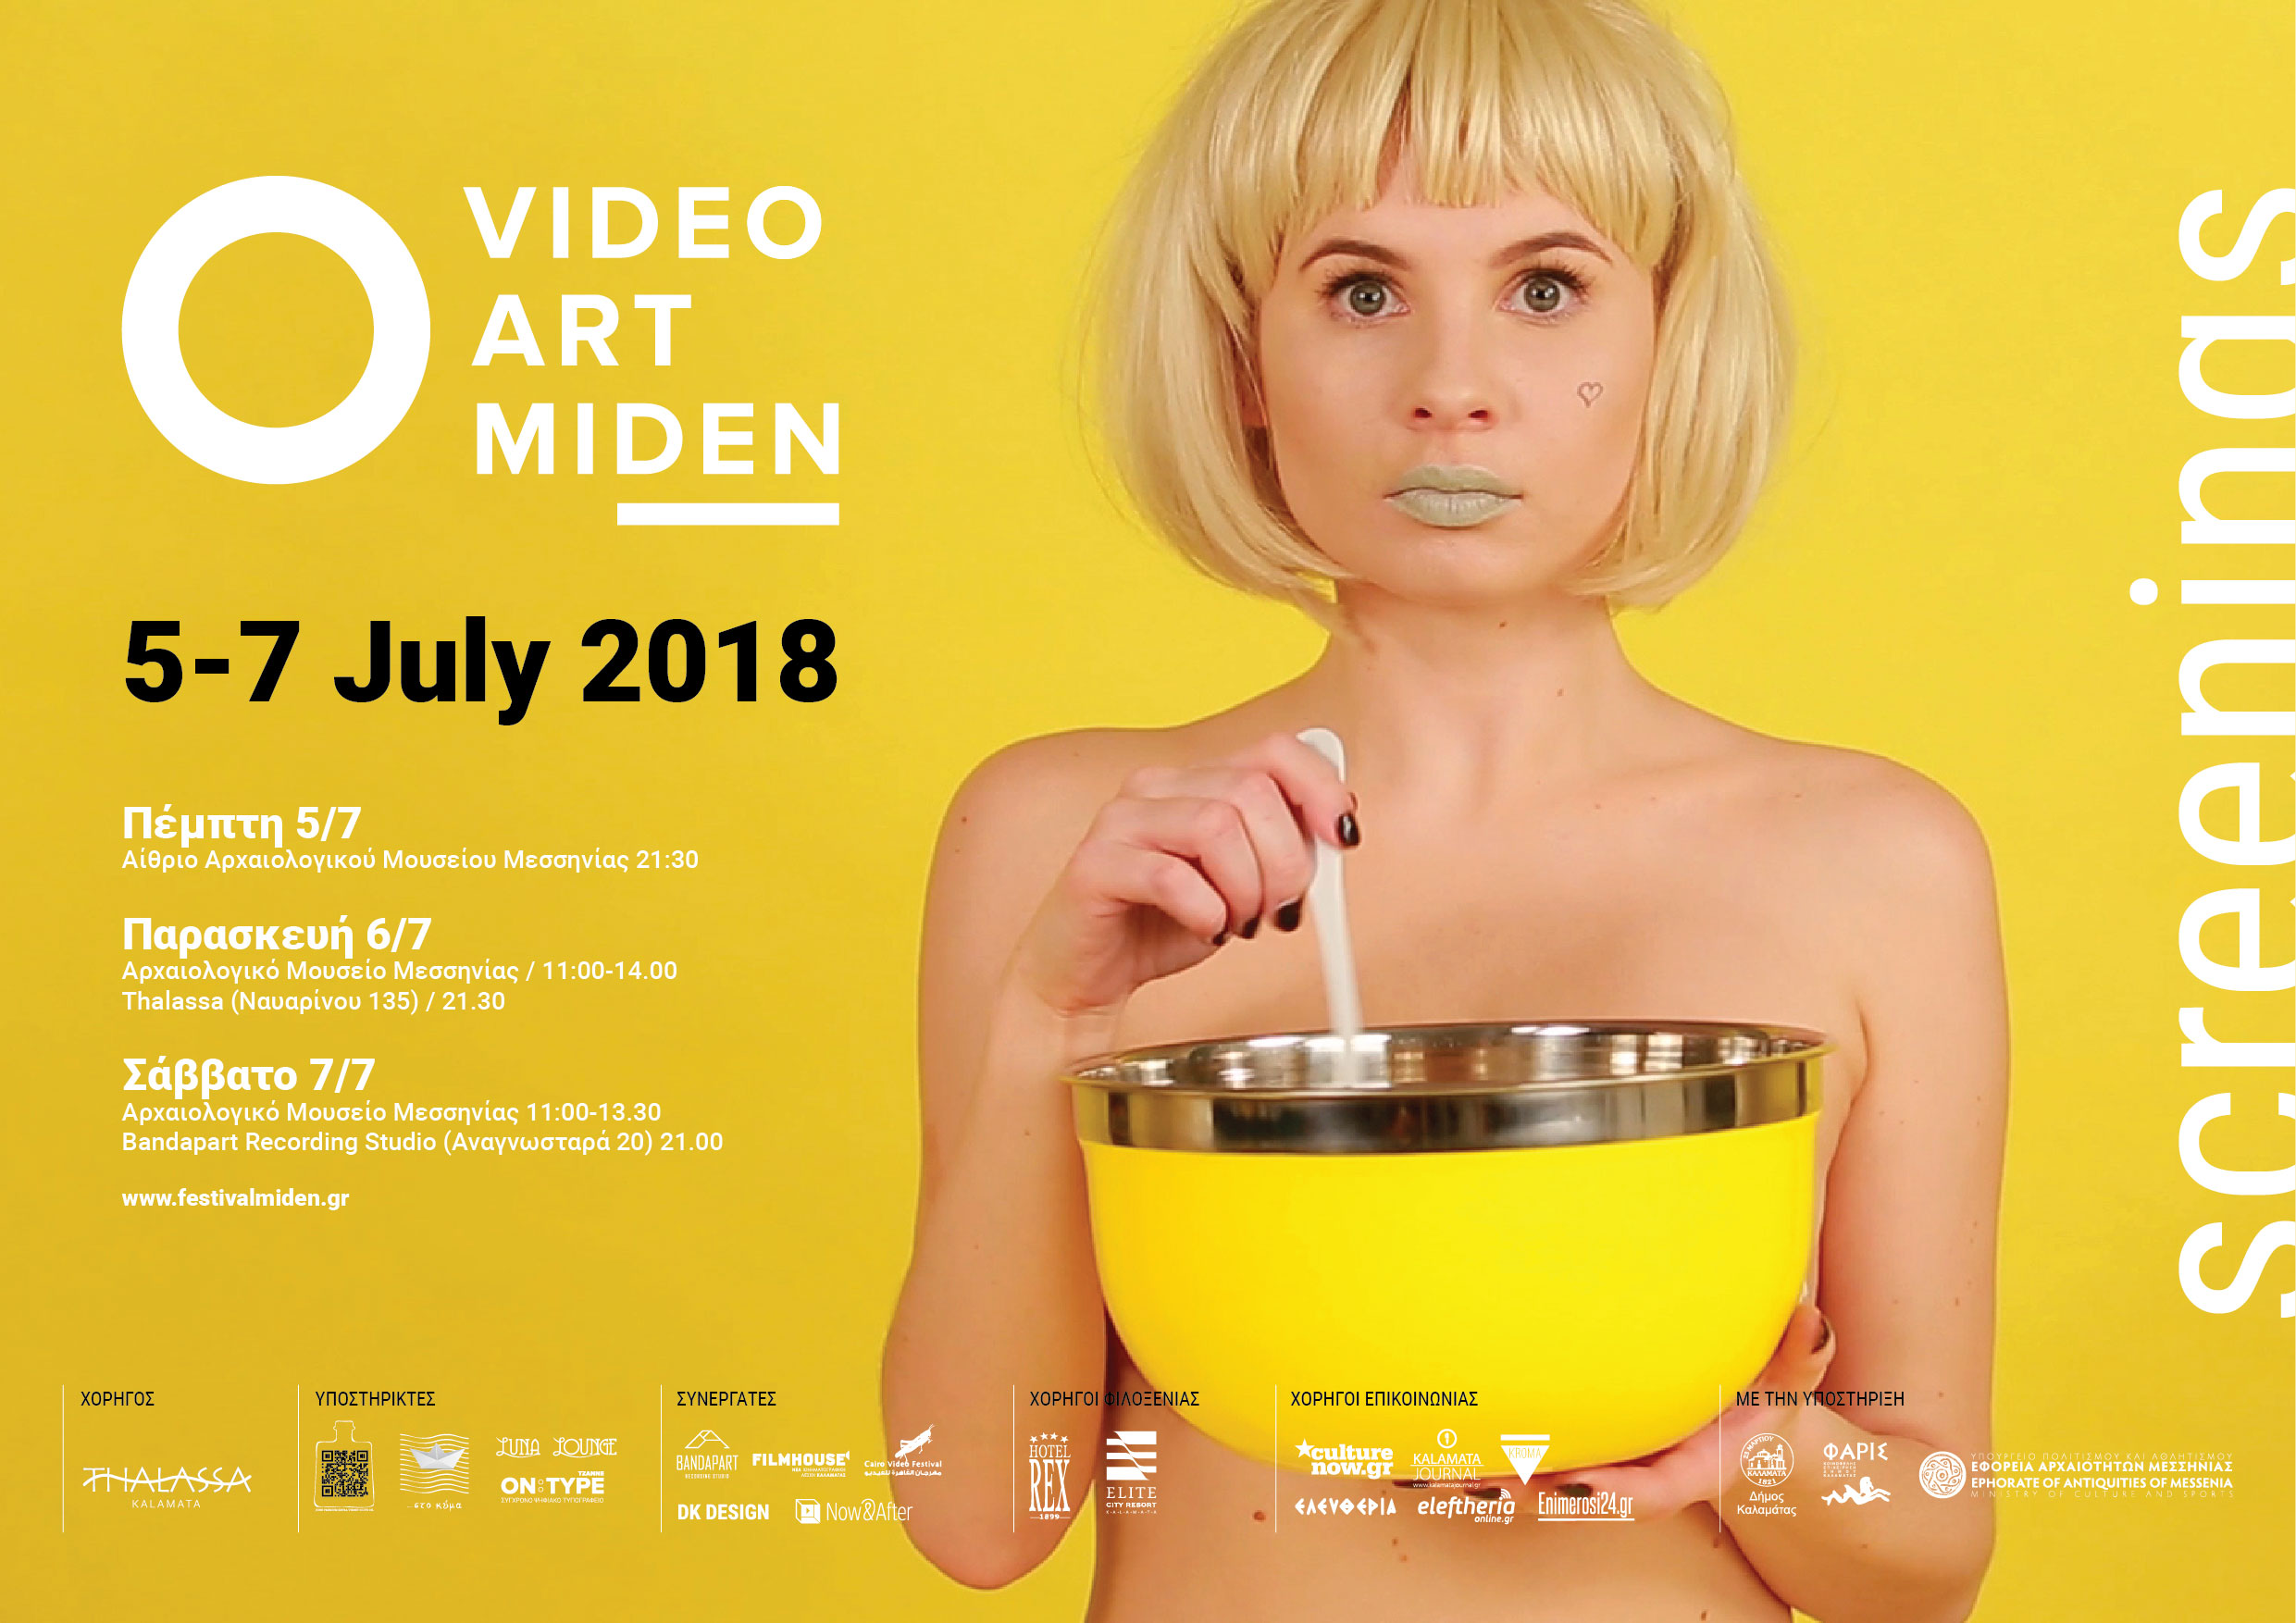 Poster_Video_Art_Miden_2018_web.jpg